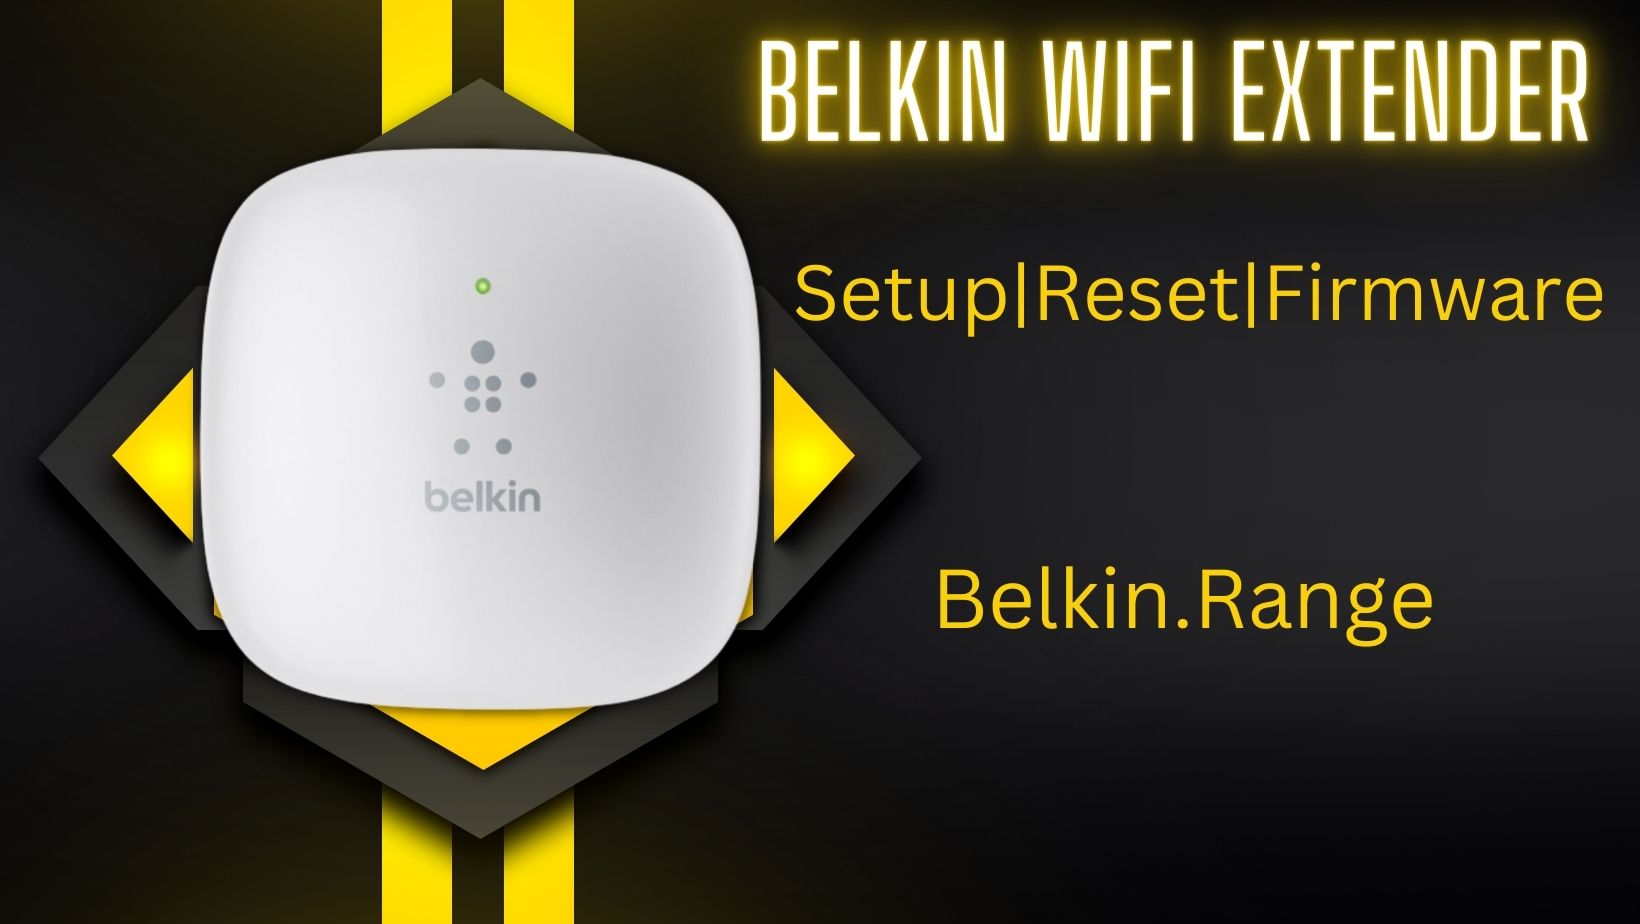 Belkin Wifi Extender